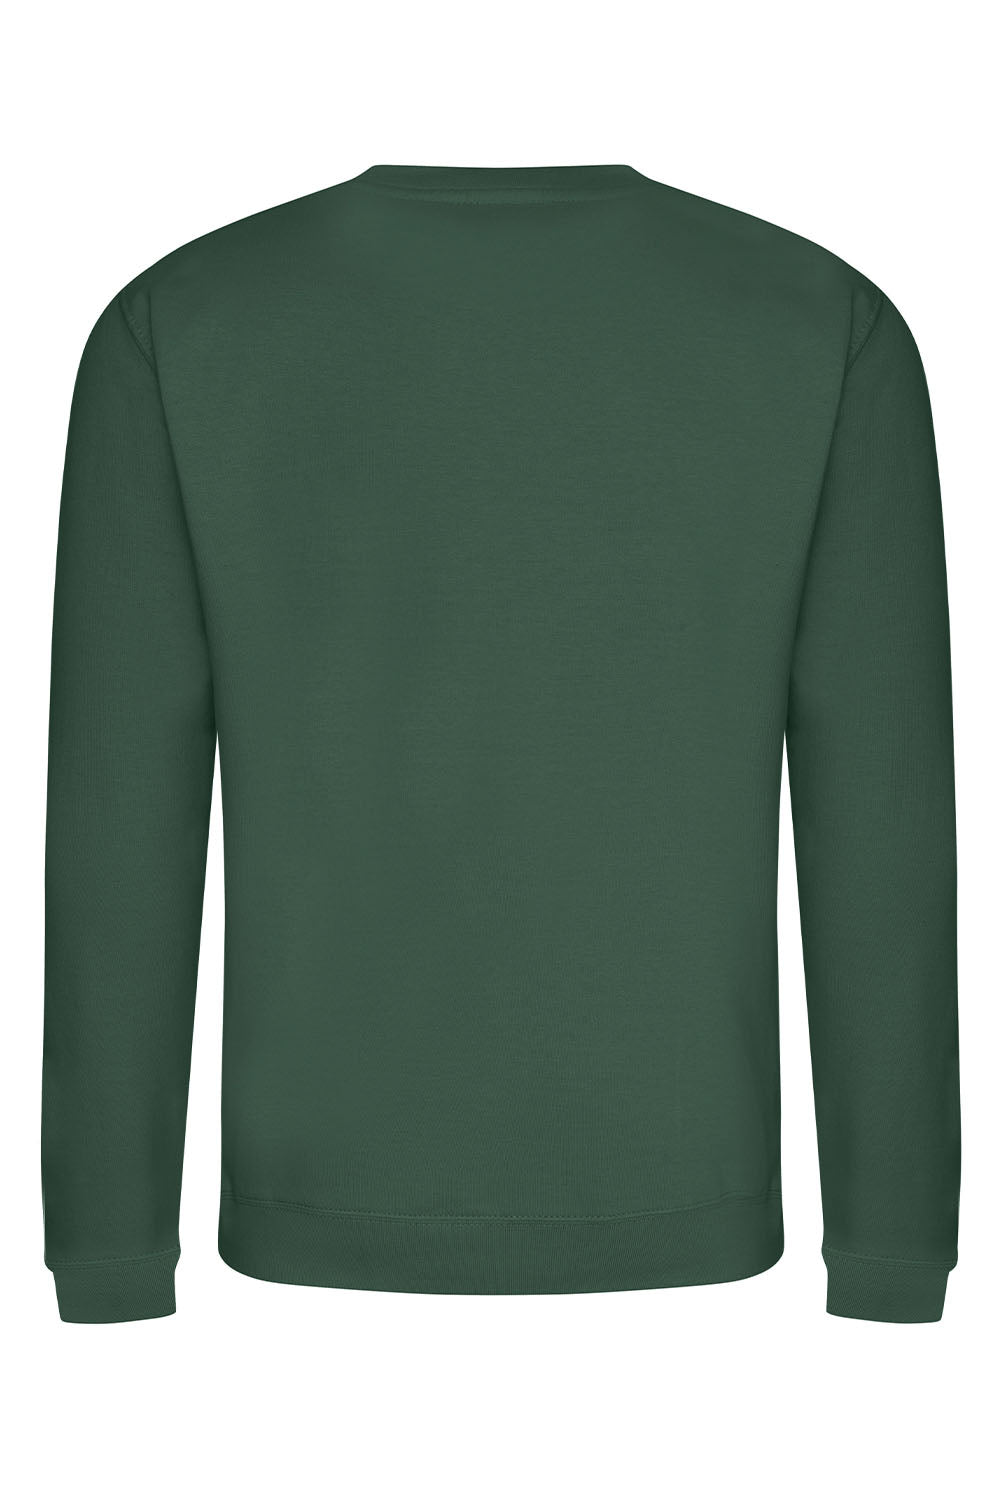 Plain Sweatshirt In Bottle Green (Single)